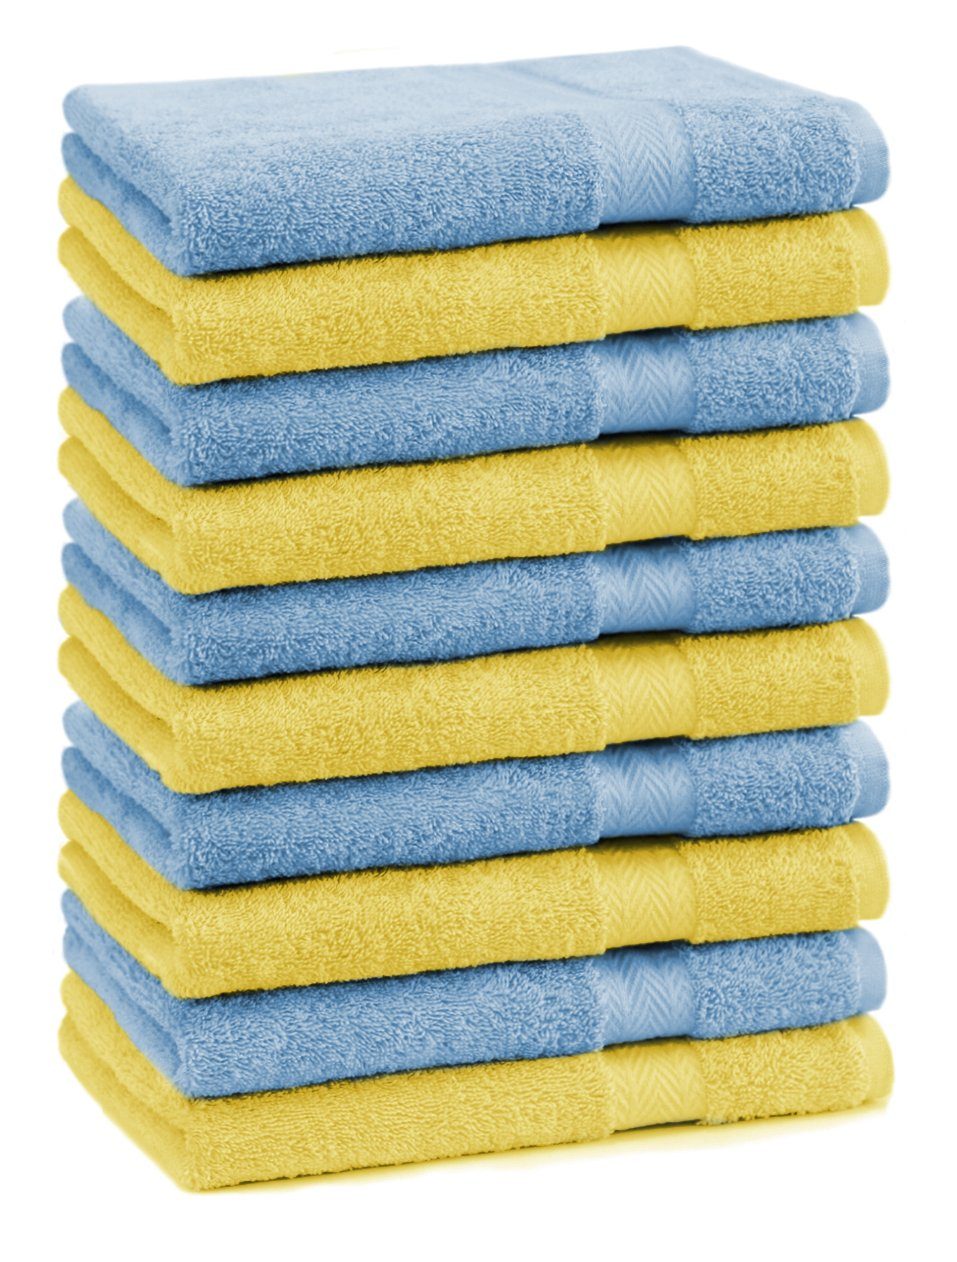 Betz Gästehandtücher 10 Stück Gästehandtücher Premium 100% Baumwolle Gästetuch-Set 30x50 cm Farbe gelb und hellblau, 100% Baumwolle